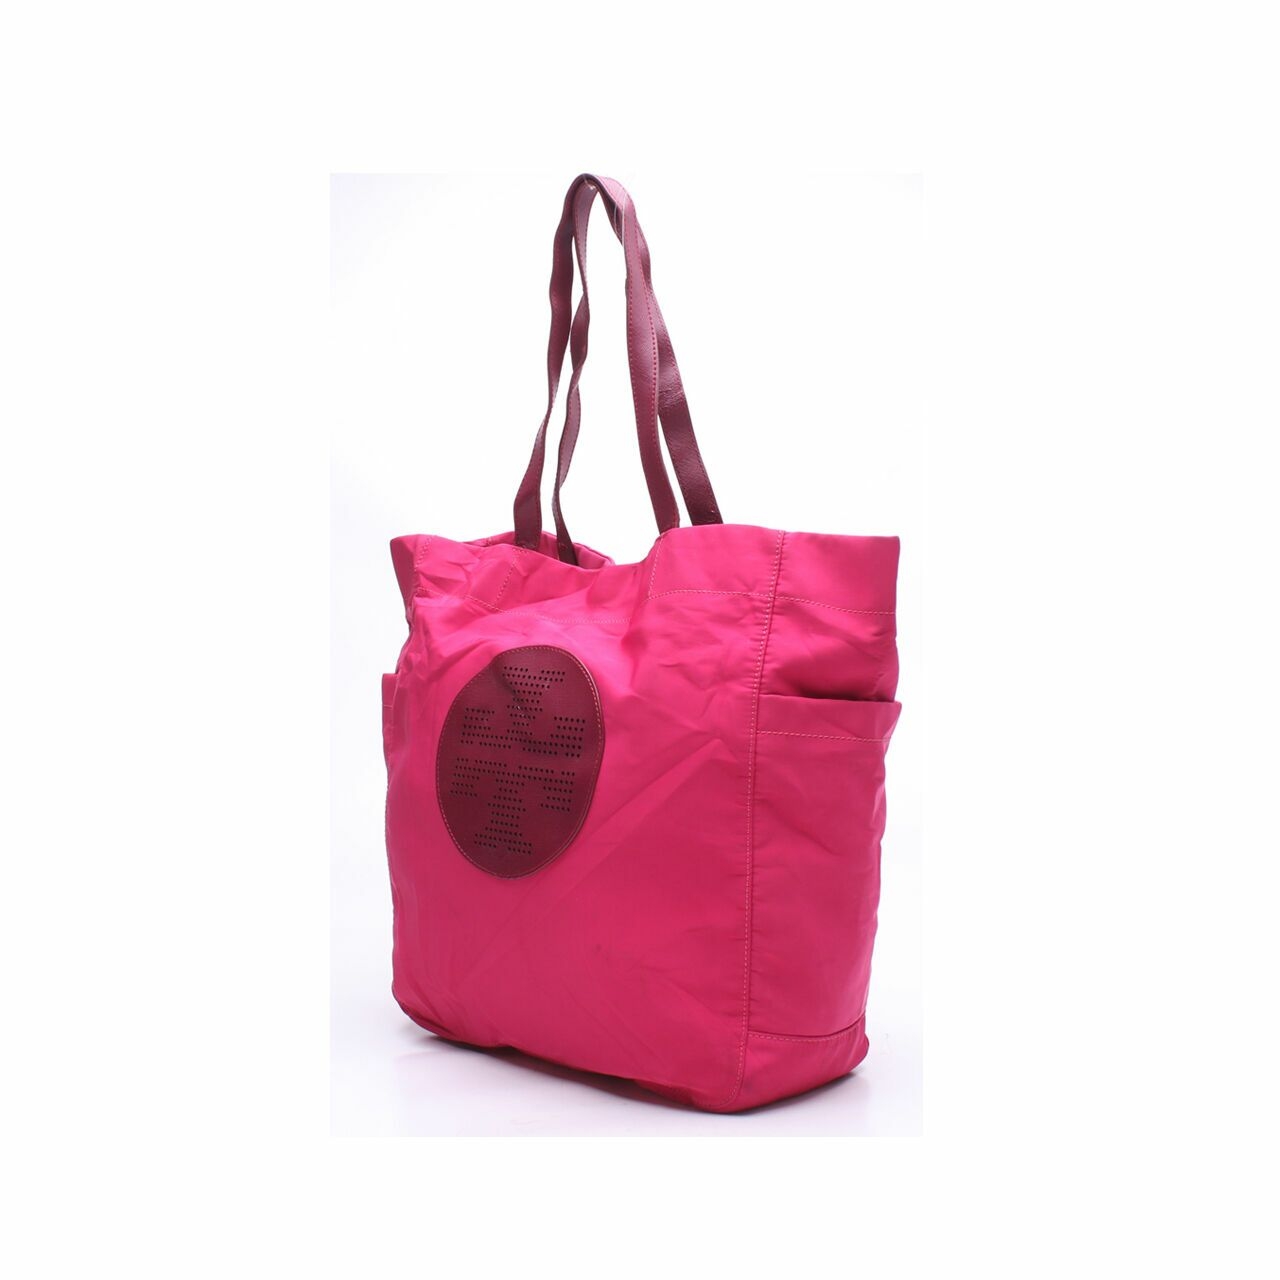 Tory Burch Pink Tote Bag